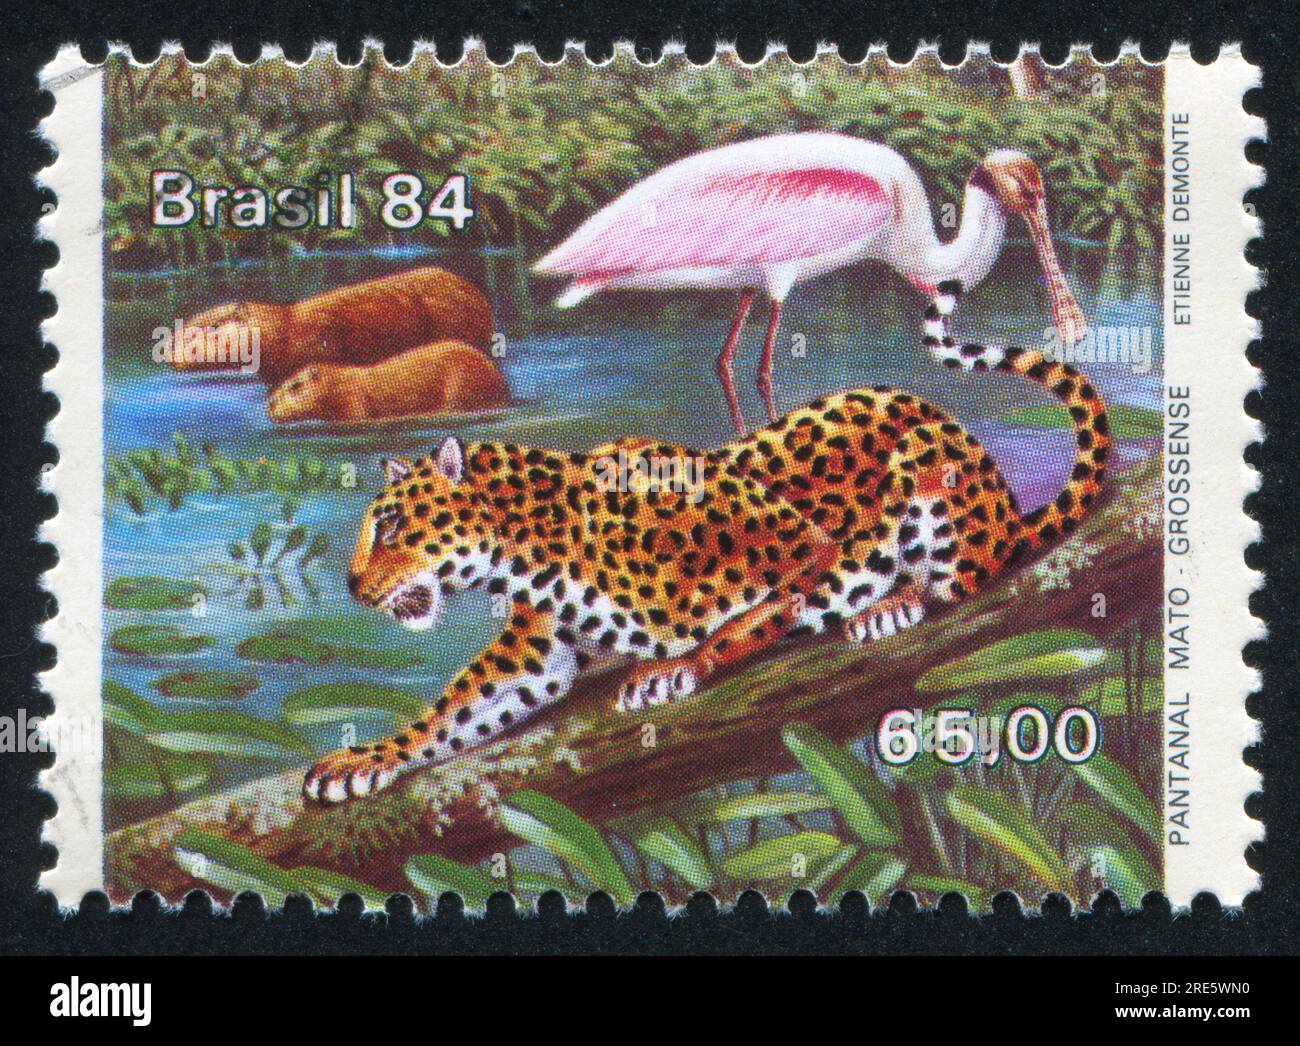 BRÉSIL - CIRCA 1984 : timbre imprimé par le Brésil, montre jaguar, circa 1984 Banque D'Images